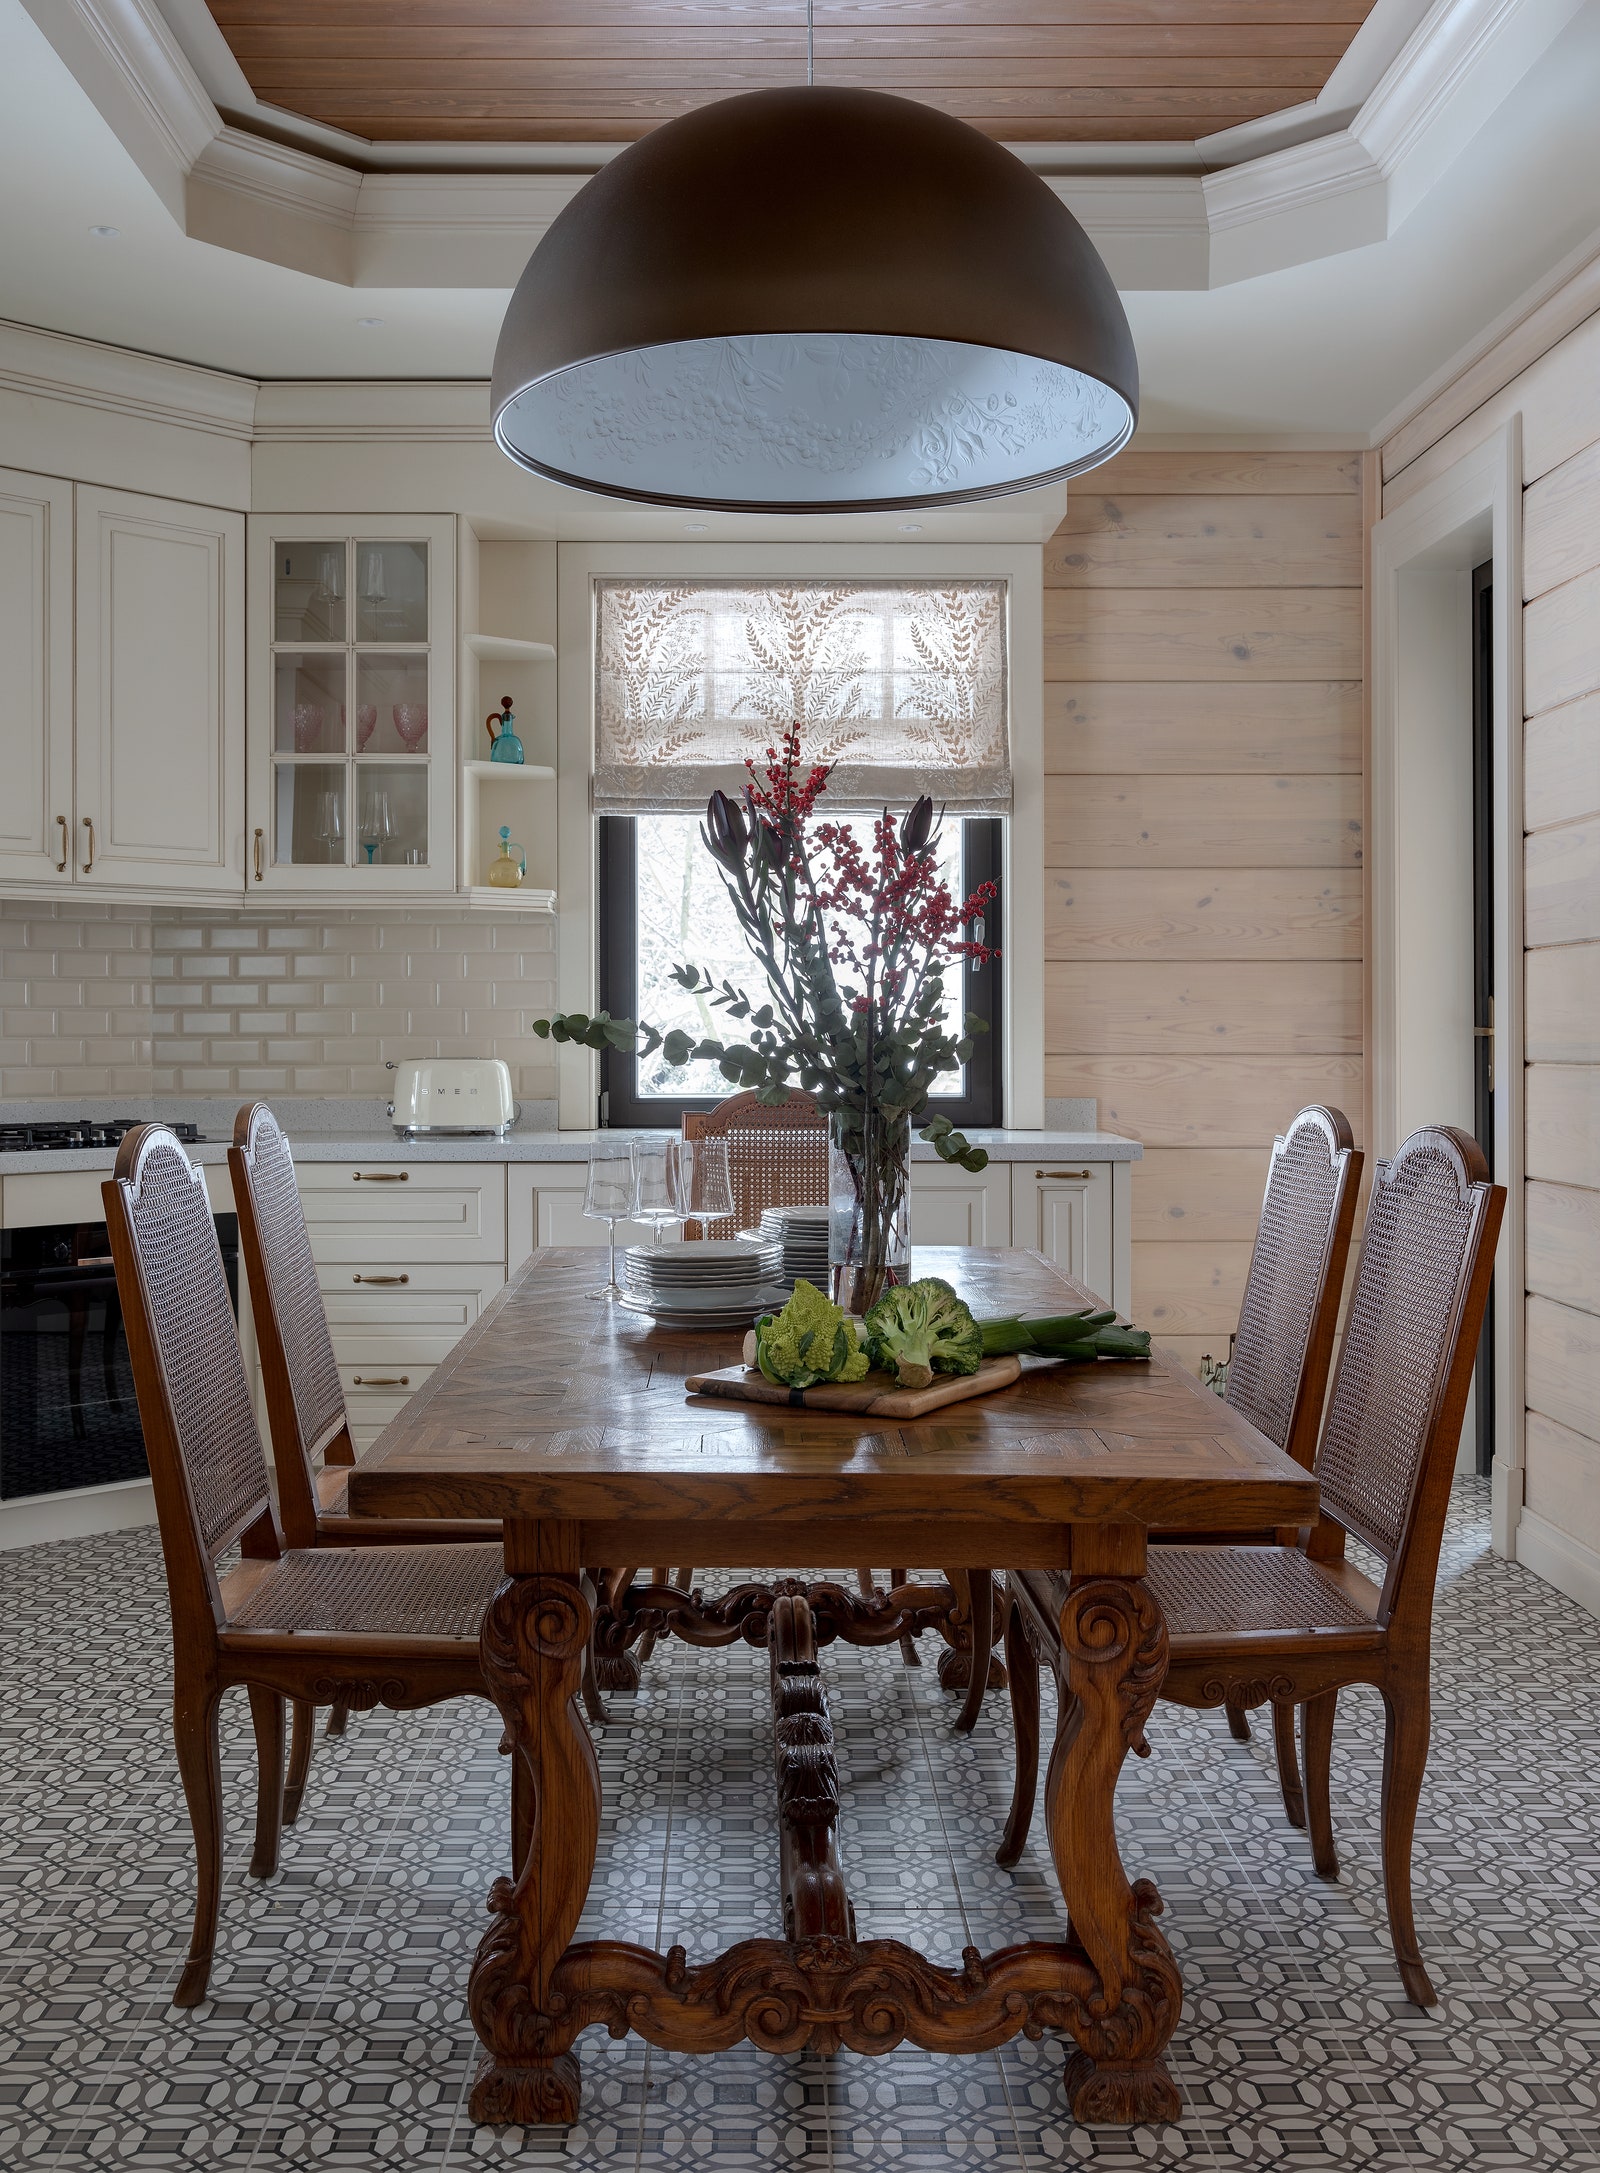 Кухнястоловая. Антикварные стол и стулья потолочный светильник Flos римские шторы с вышивкой Sanderson.